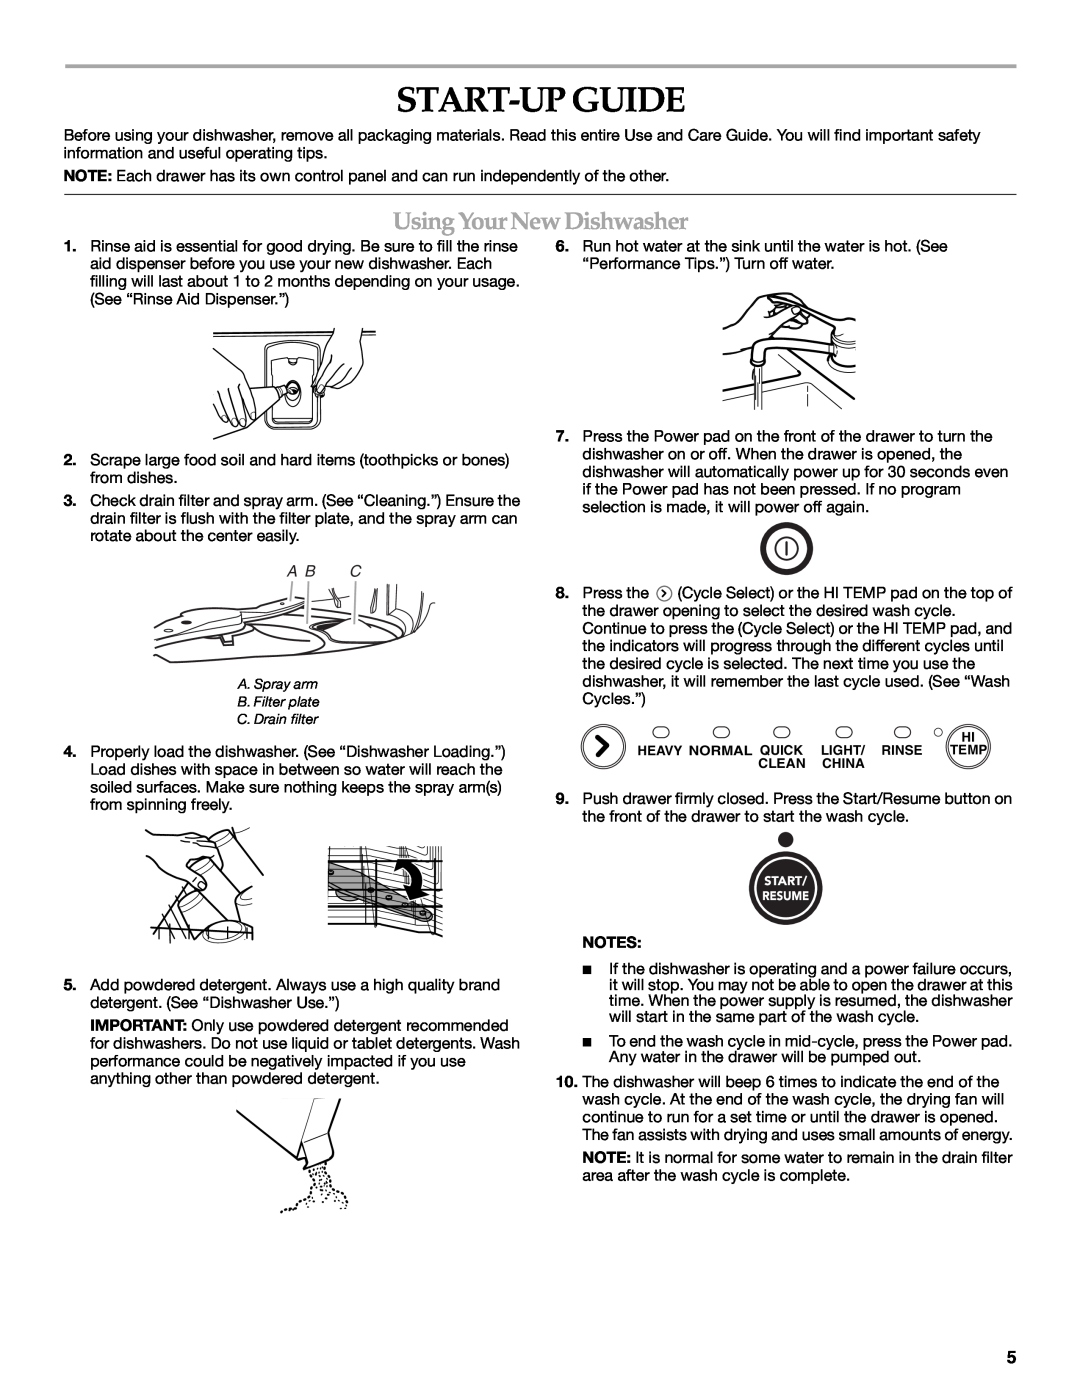 KitchenAid 8573754, KUDD01DPPA manual Start-Up Guide, Using Your New Dishwasher, A B C 